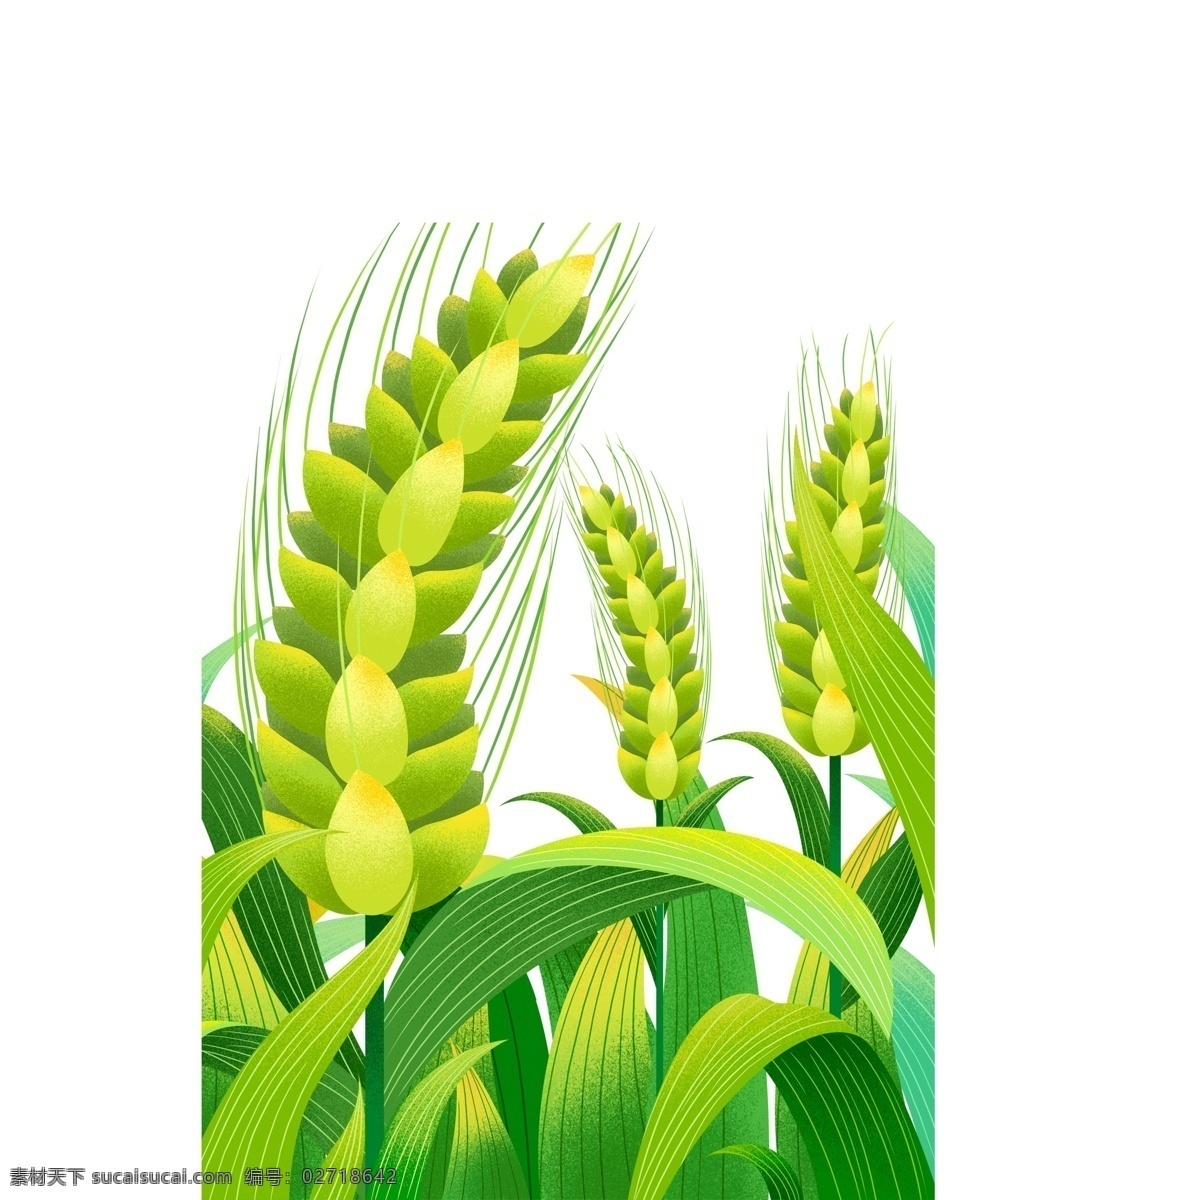 小满 节气 绿色 麦穗 图案 元素 小麦 稻穗 小满节气 绿叶 传统节气 粮食 庄稼 手绘 元素设计 简约 创意元素 免抠元素